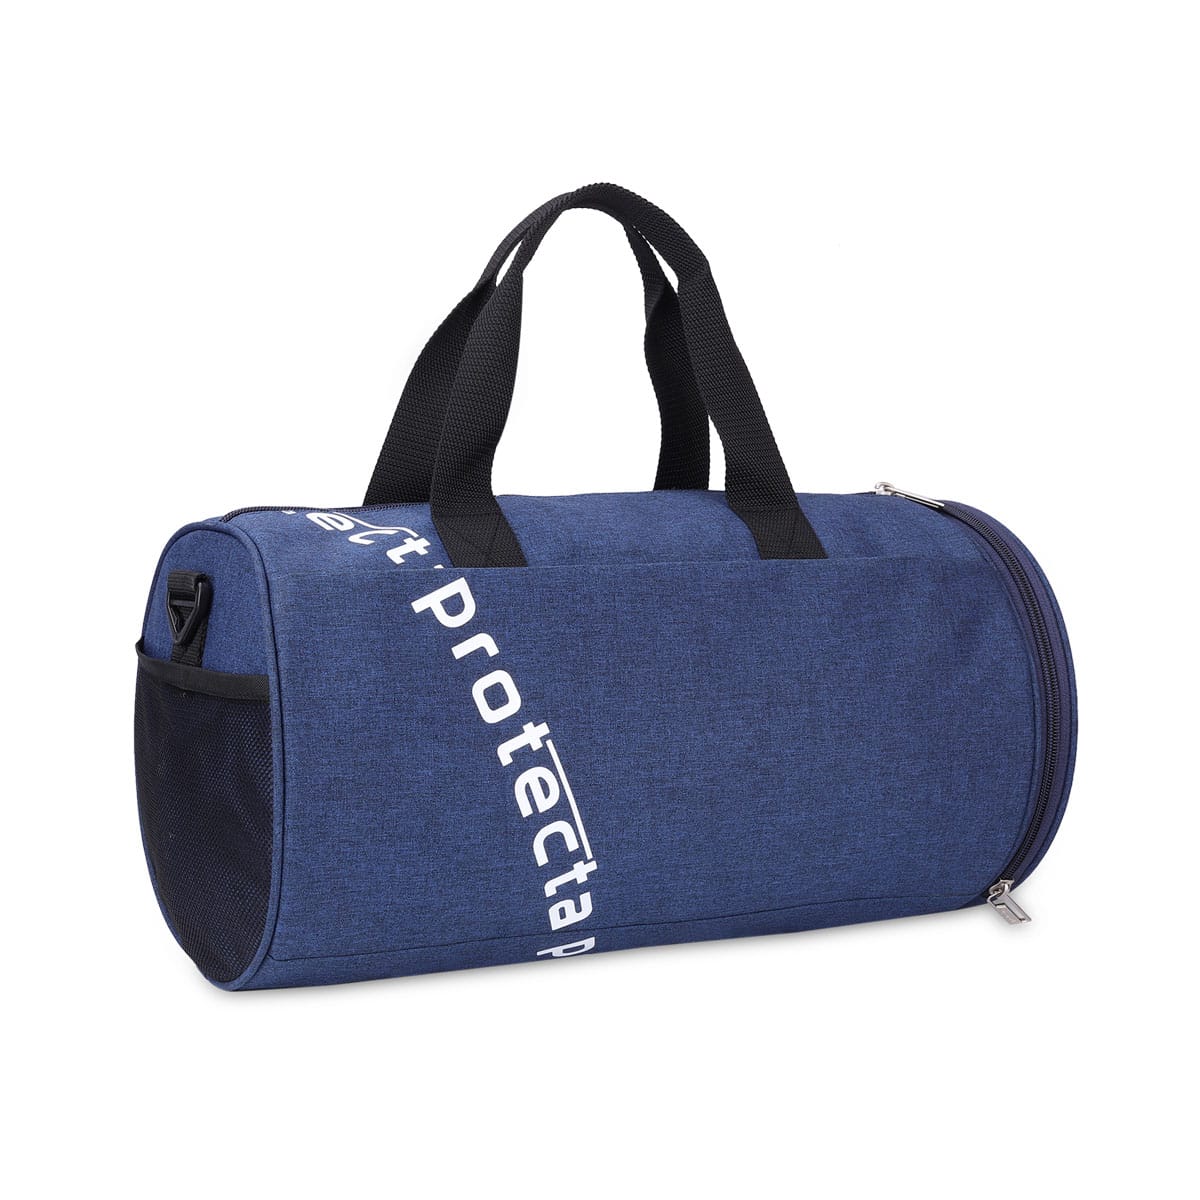 Indigo | Protecta Basic Element Gym Bag-2